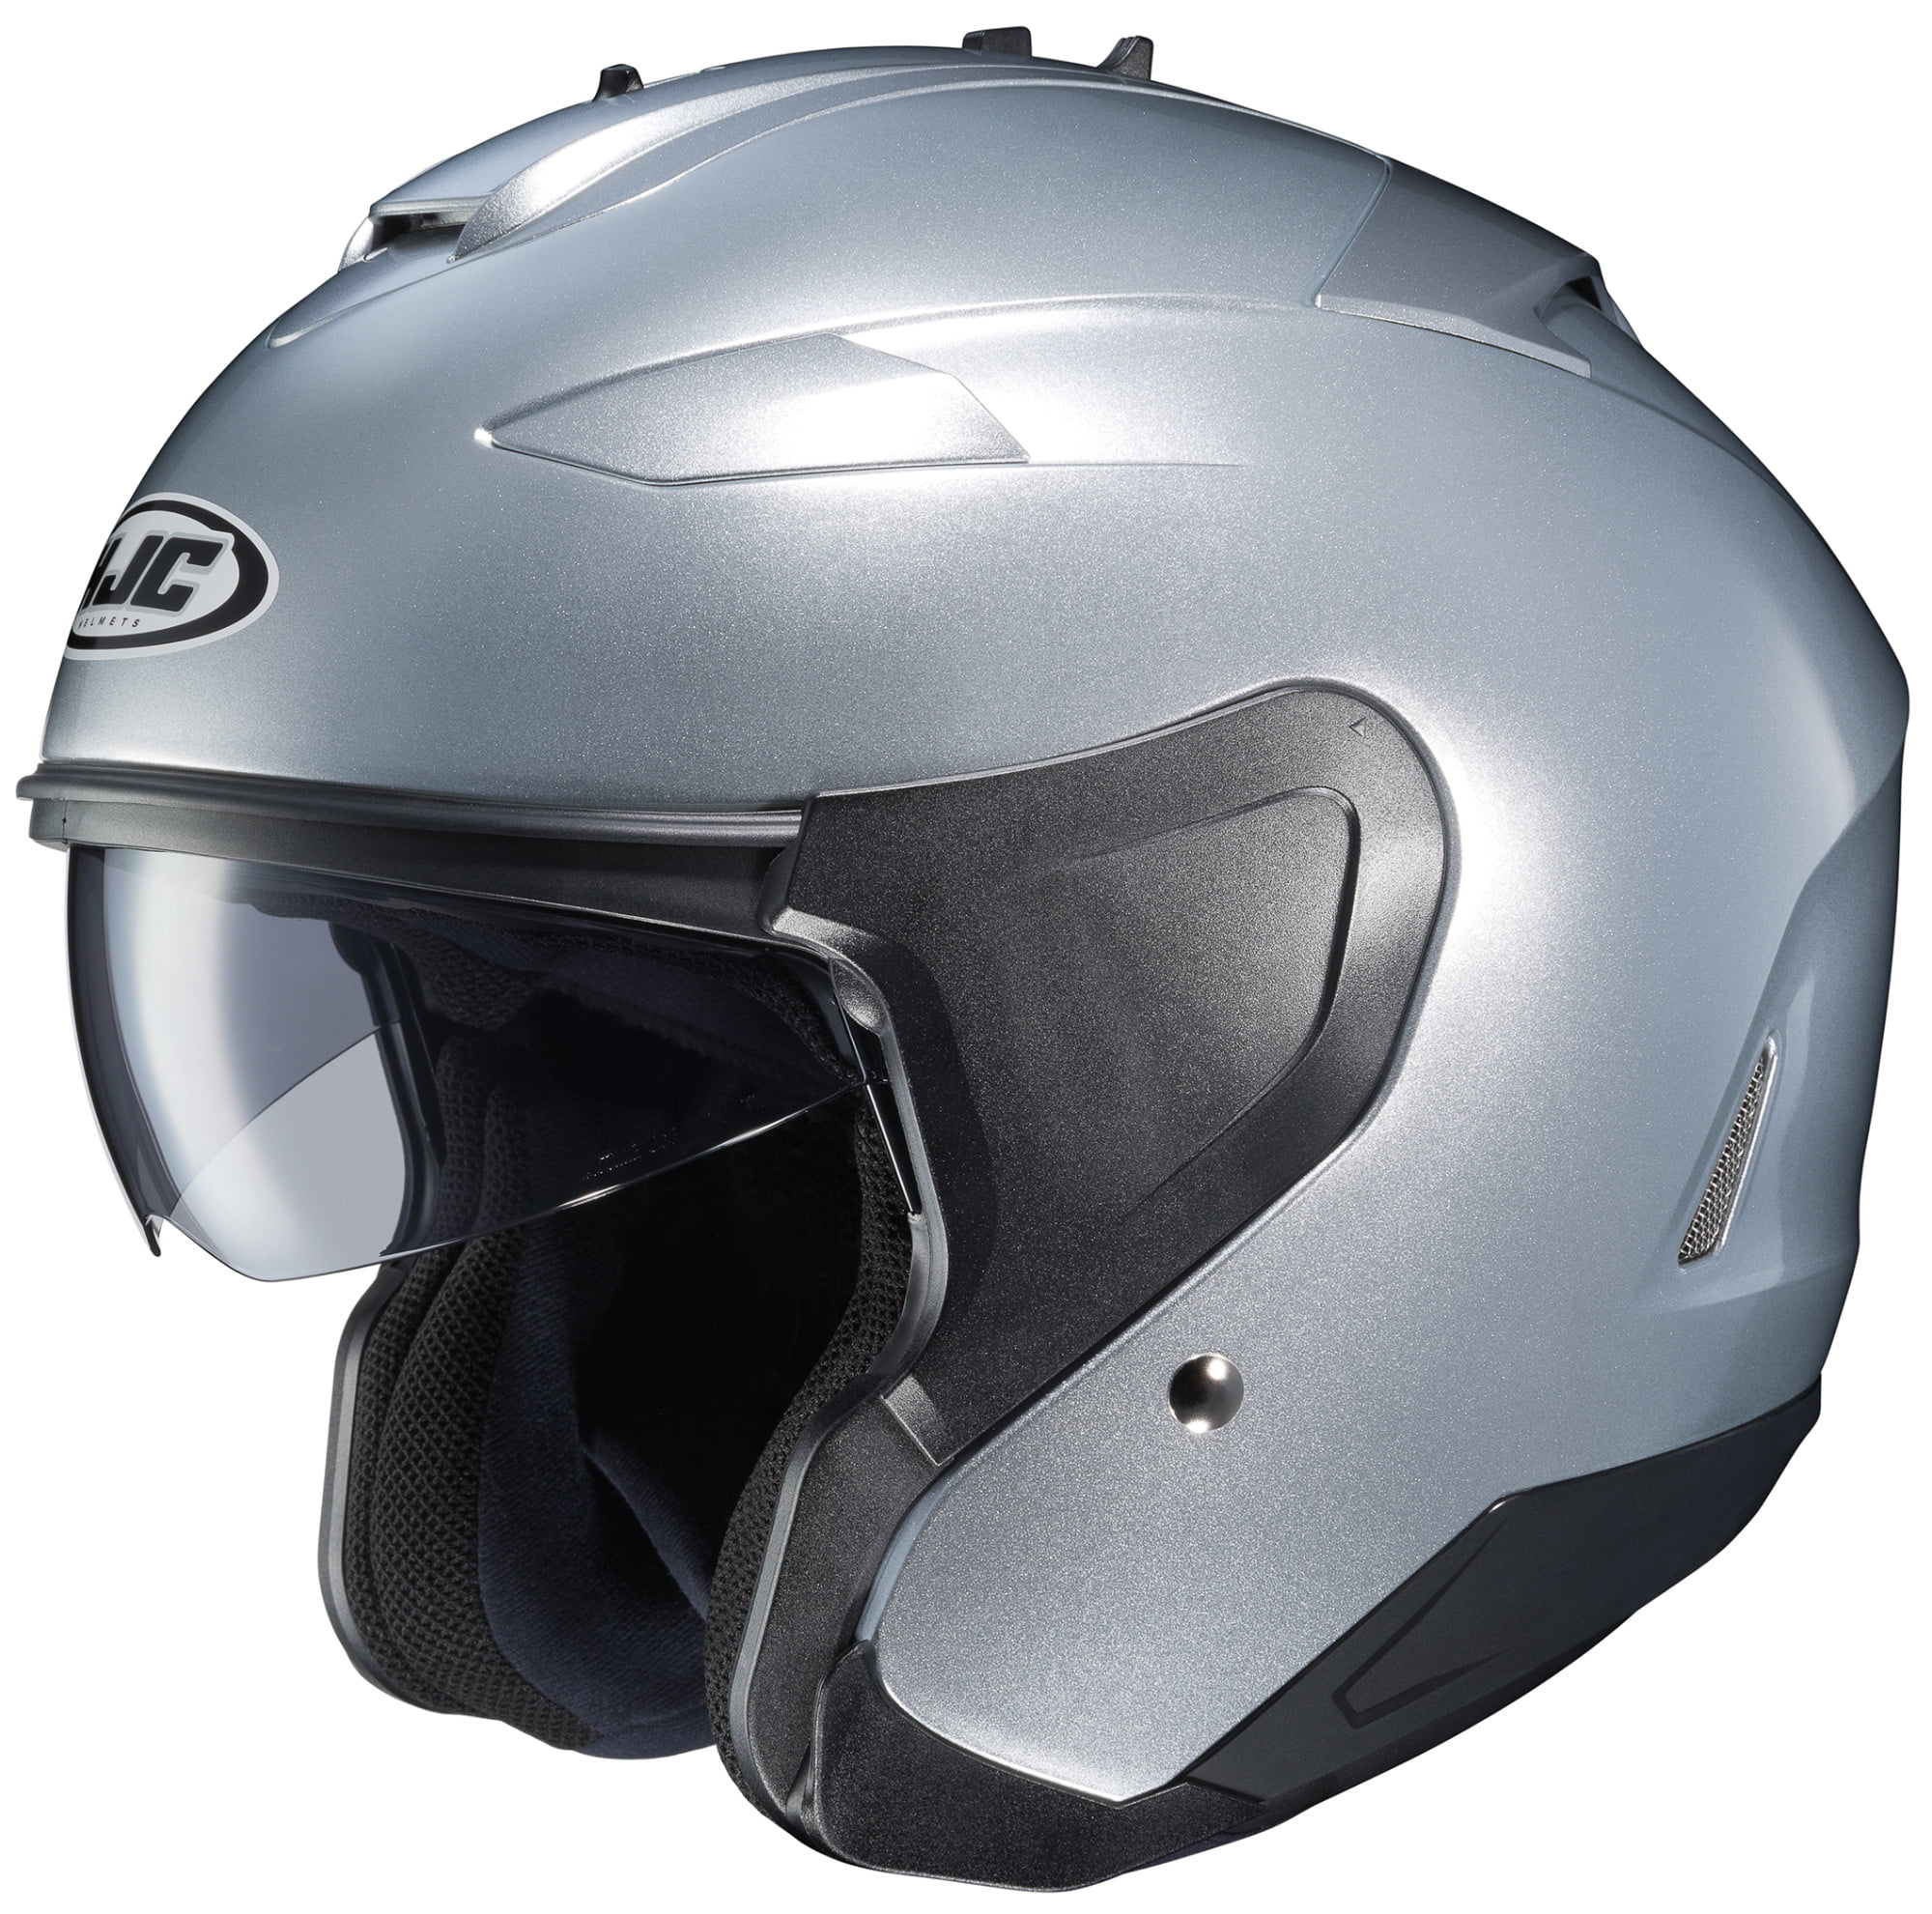 Light Silver, Small HJC Helmets is-2 Helmet 